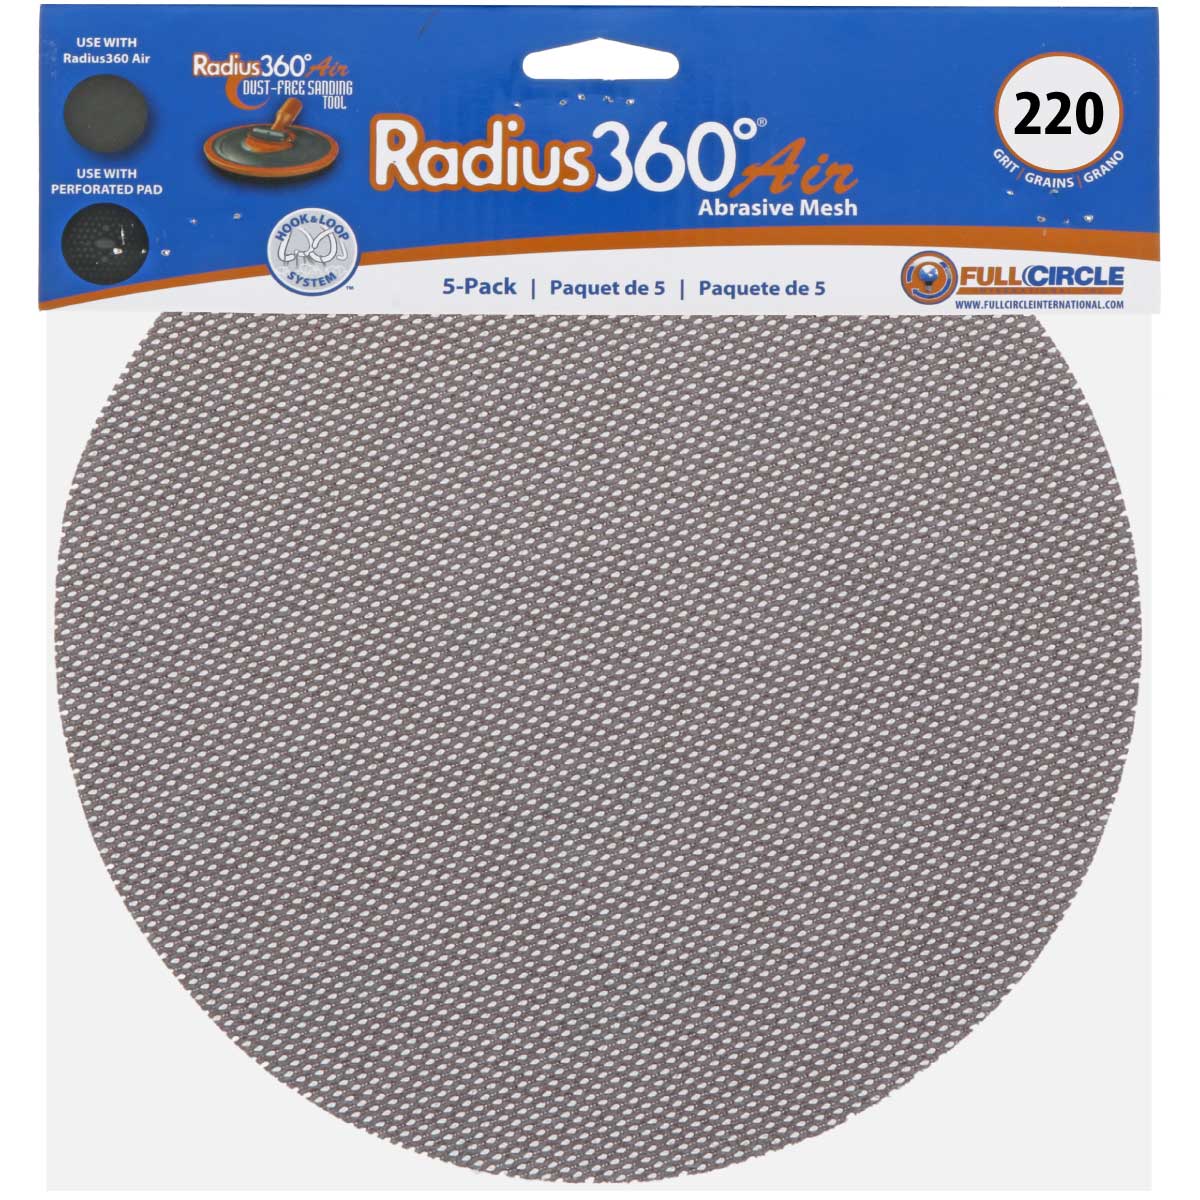 Radius 360 Mesh Abrasive 220